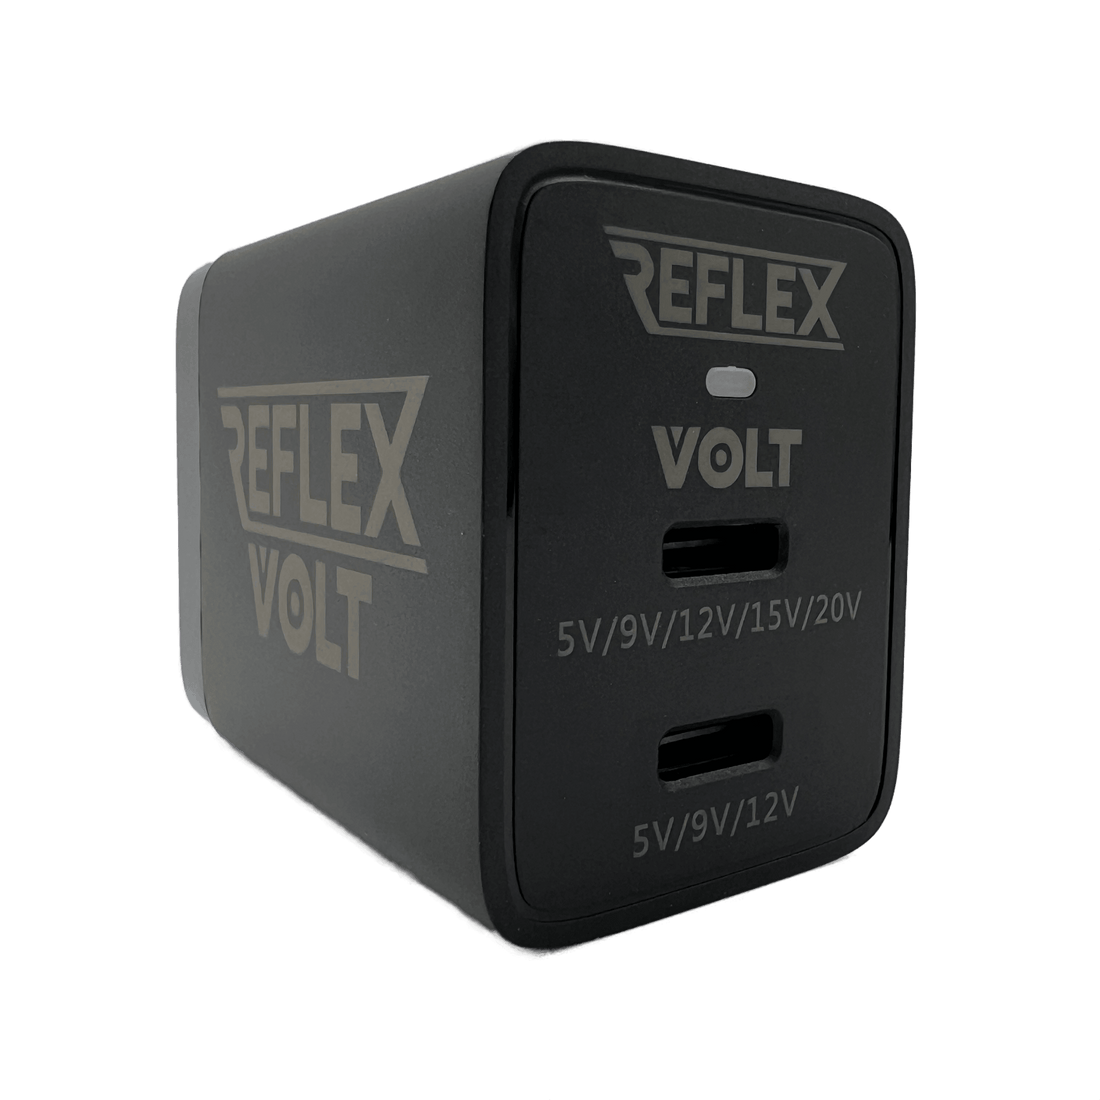 Reflex Volt USB PD Power Supplies - MiSTer Addons